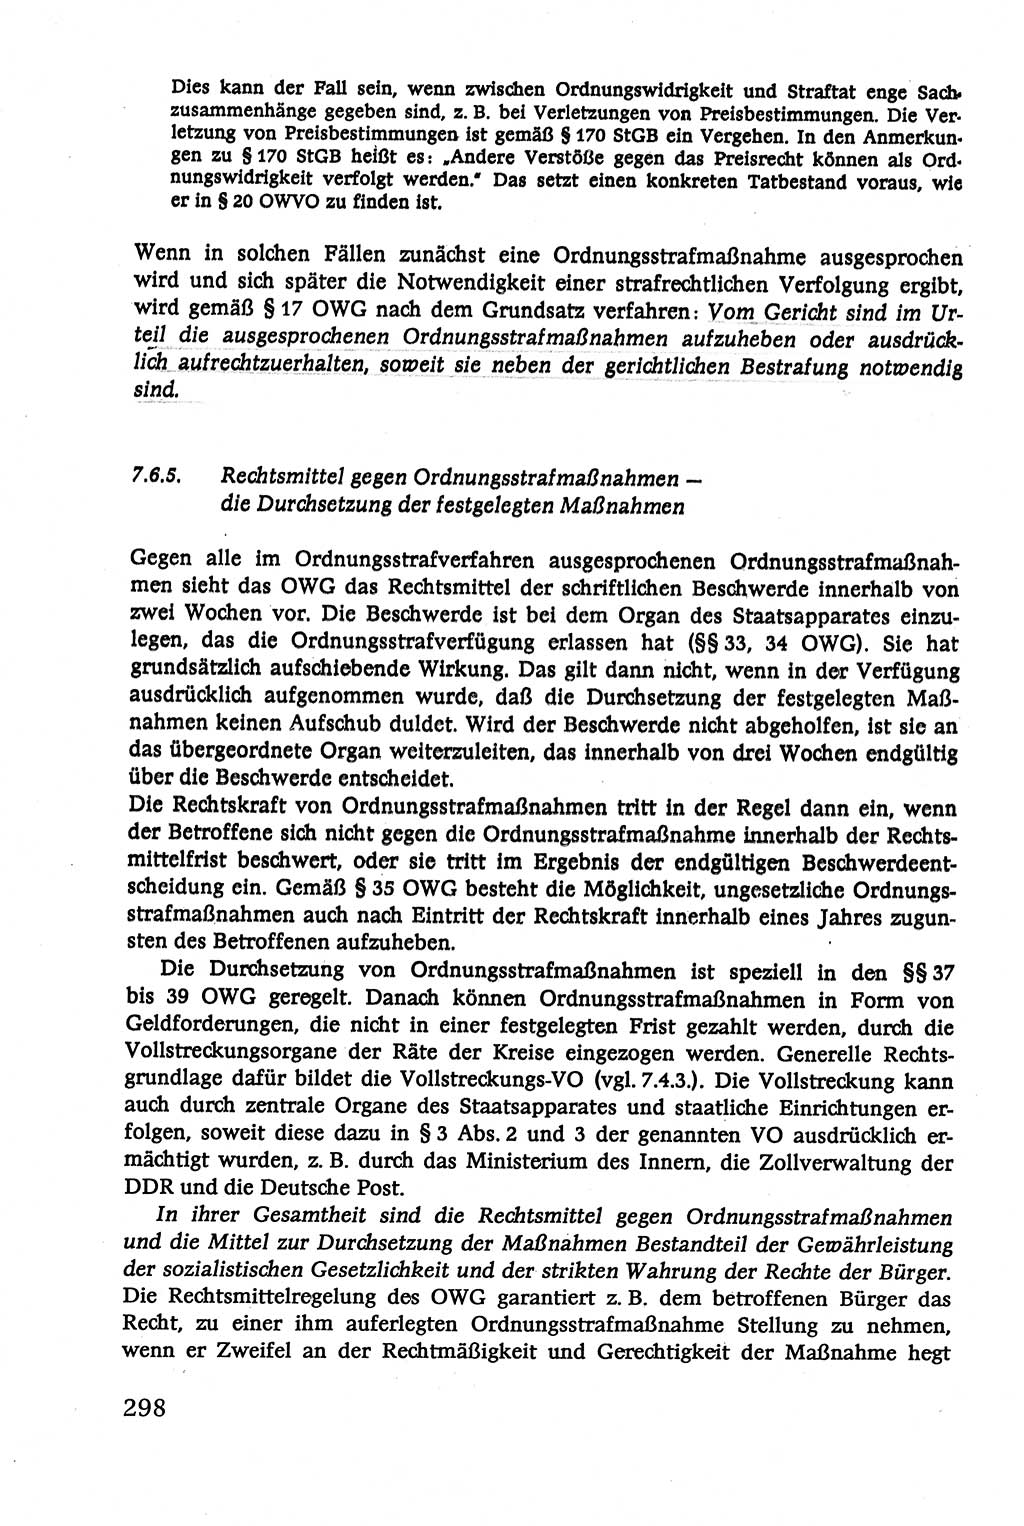 Verwaltungsrecht [Deutsche Demokratische Republik (DDR)], Lehrbuch 1979, Seite 298 (Verw.-R. DDR Lb. 1979, S. 298)